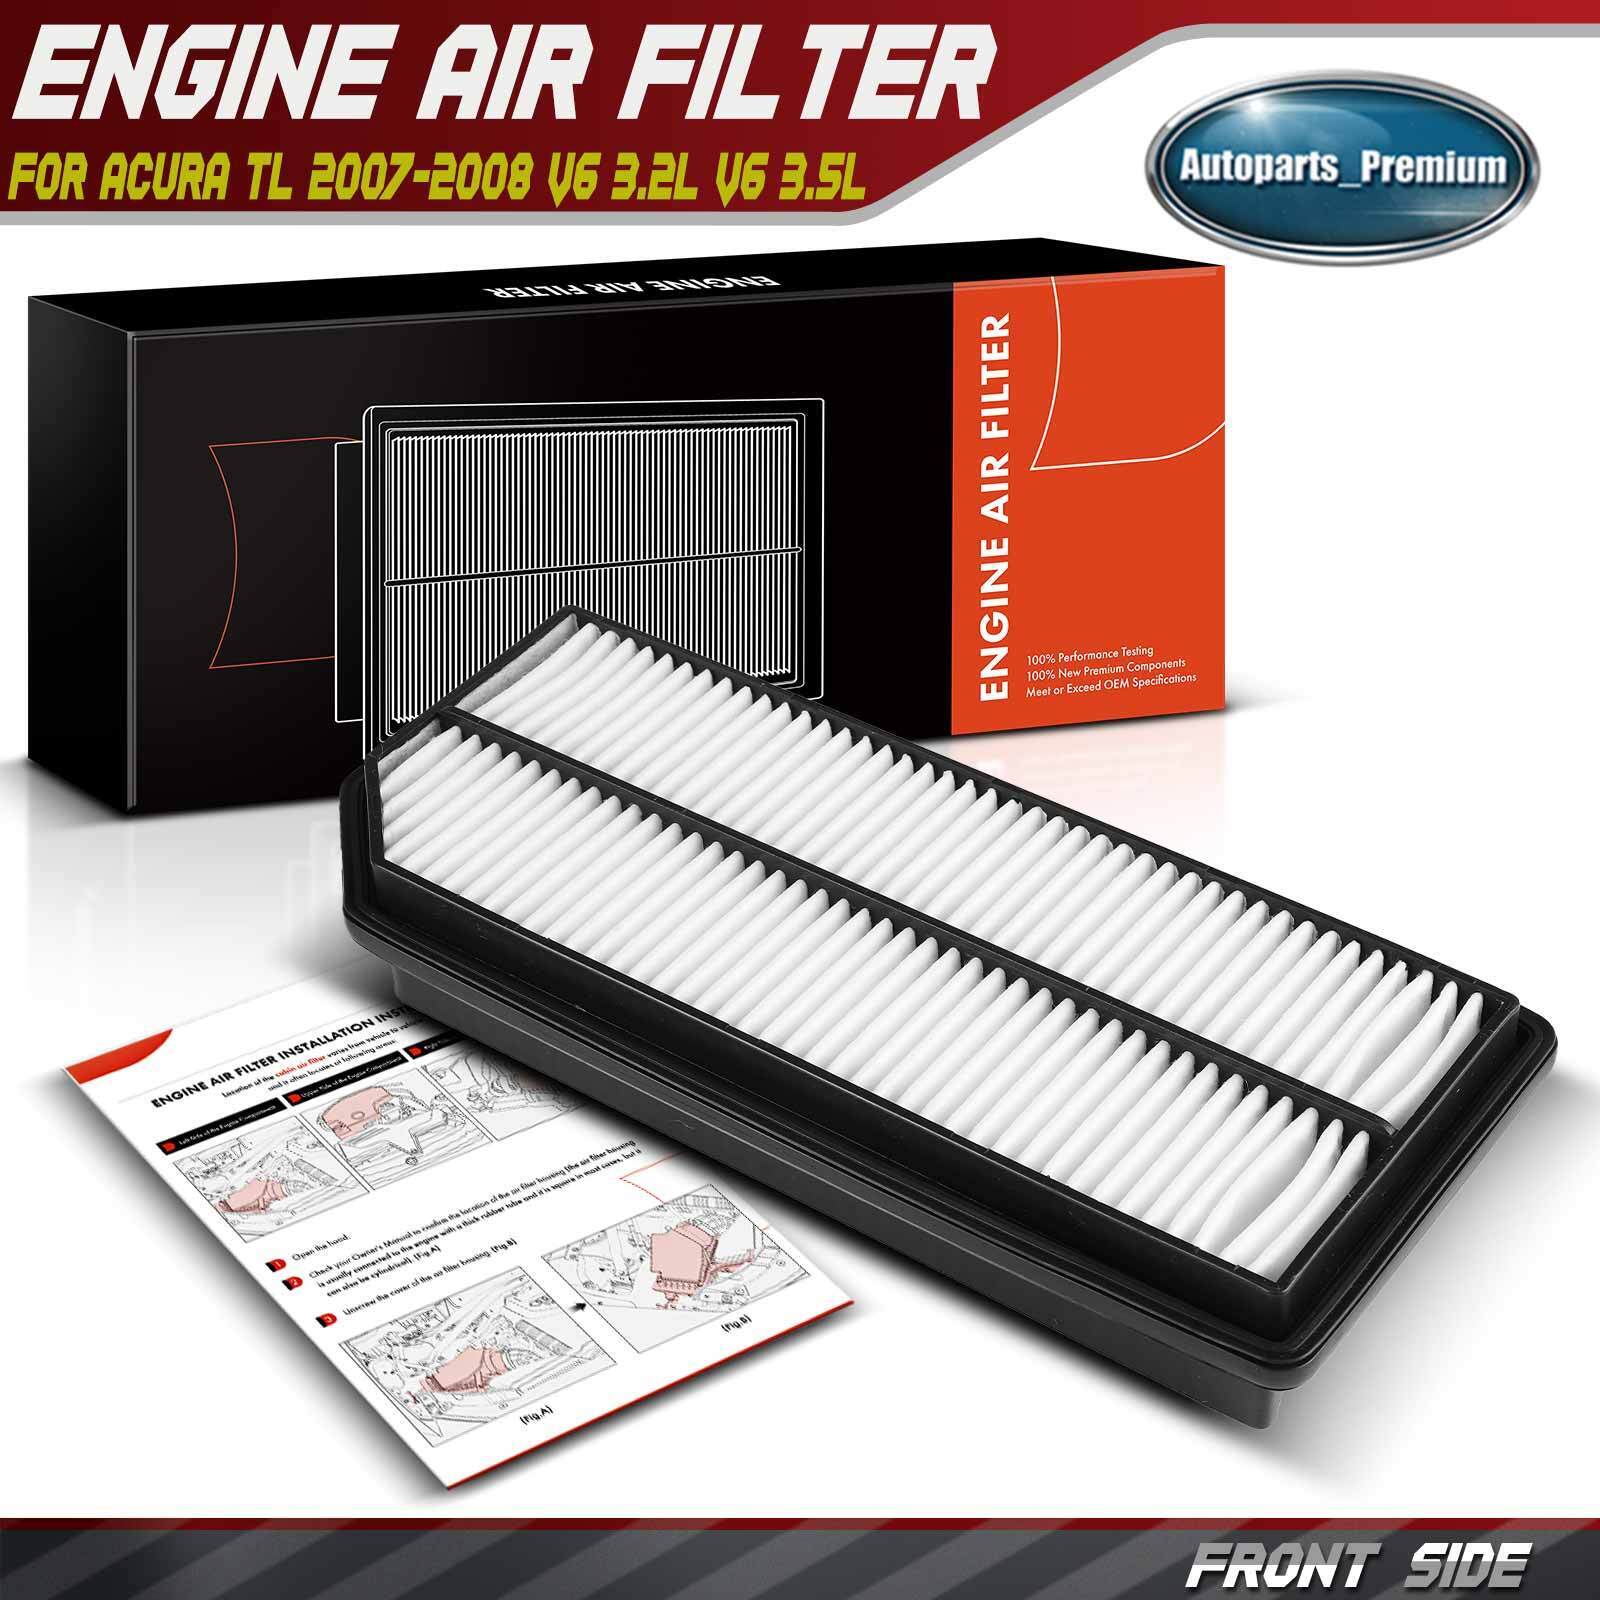 Engine Air Filter for Acura TL 2007-2008 V6 3.2L V6 3.5L Irregular 17220RDAA10